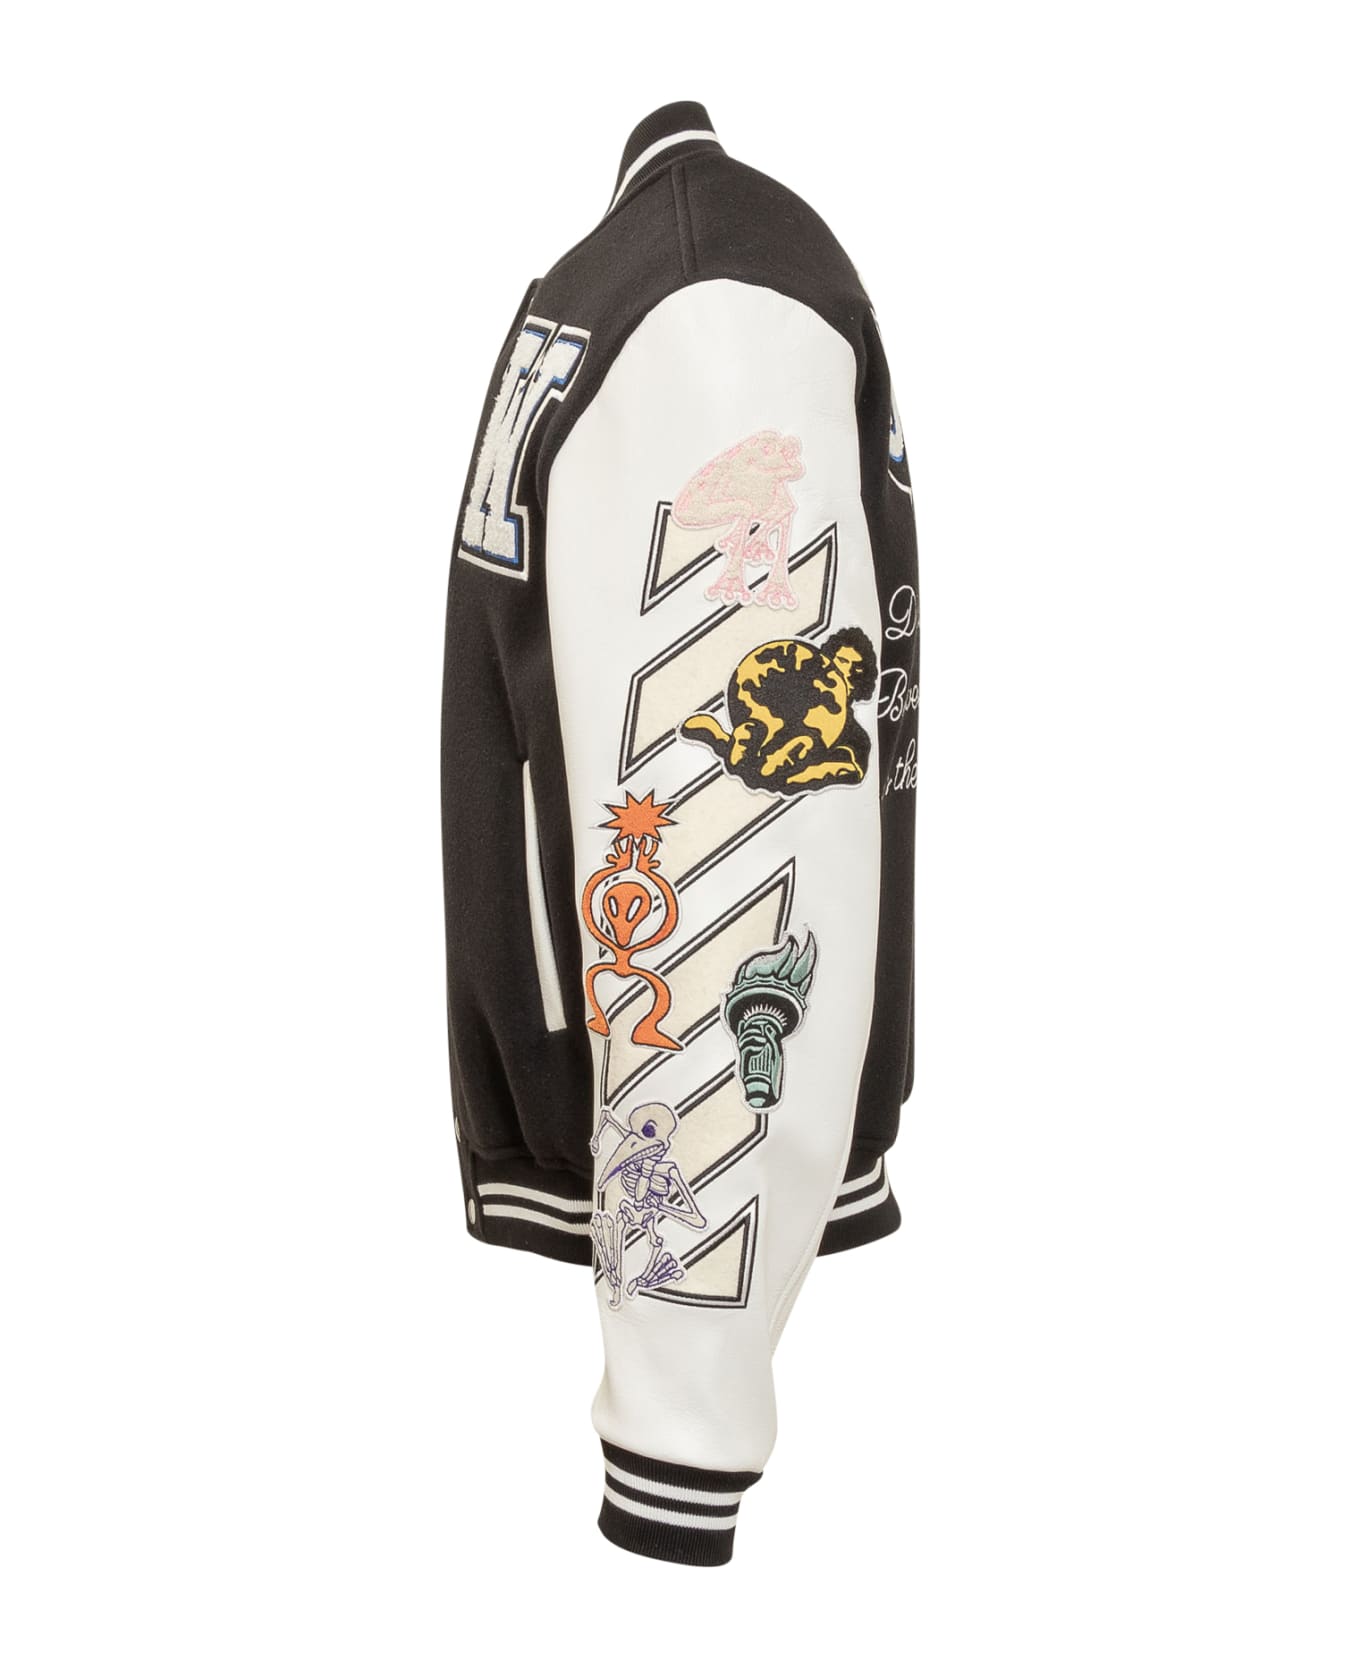 Off-White Club Patch Varsity Jacket - BLACK WHITE レザージャケット